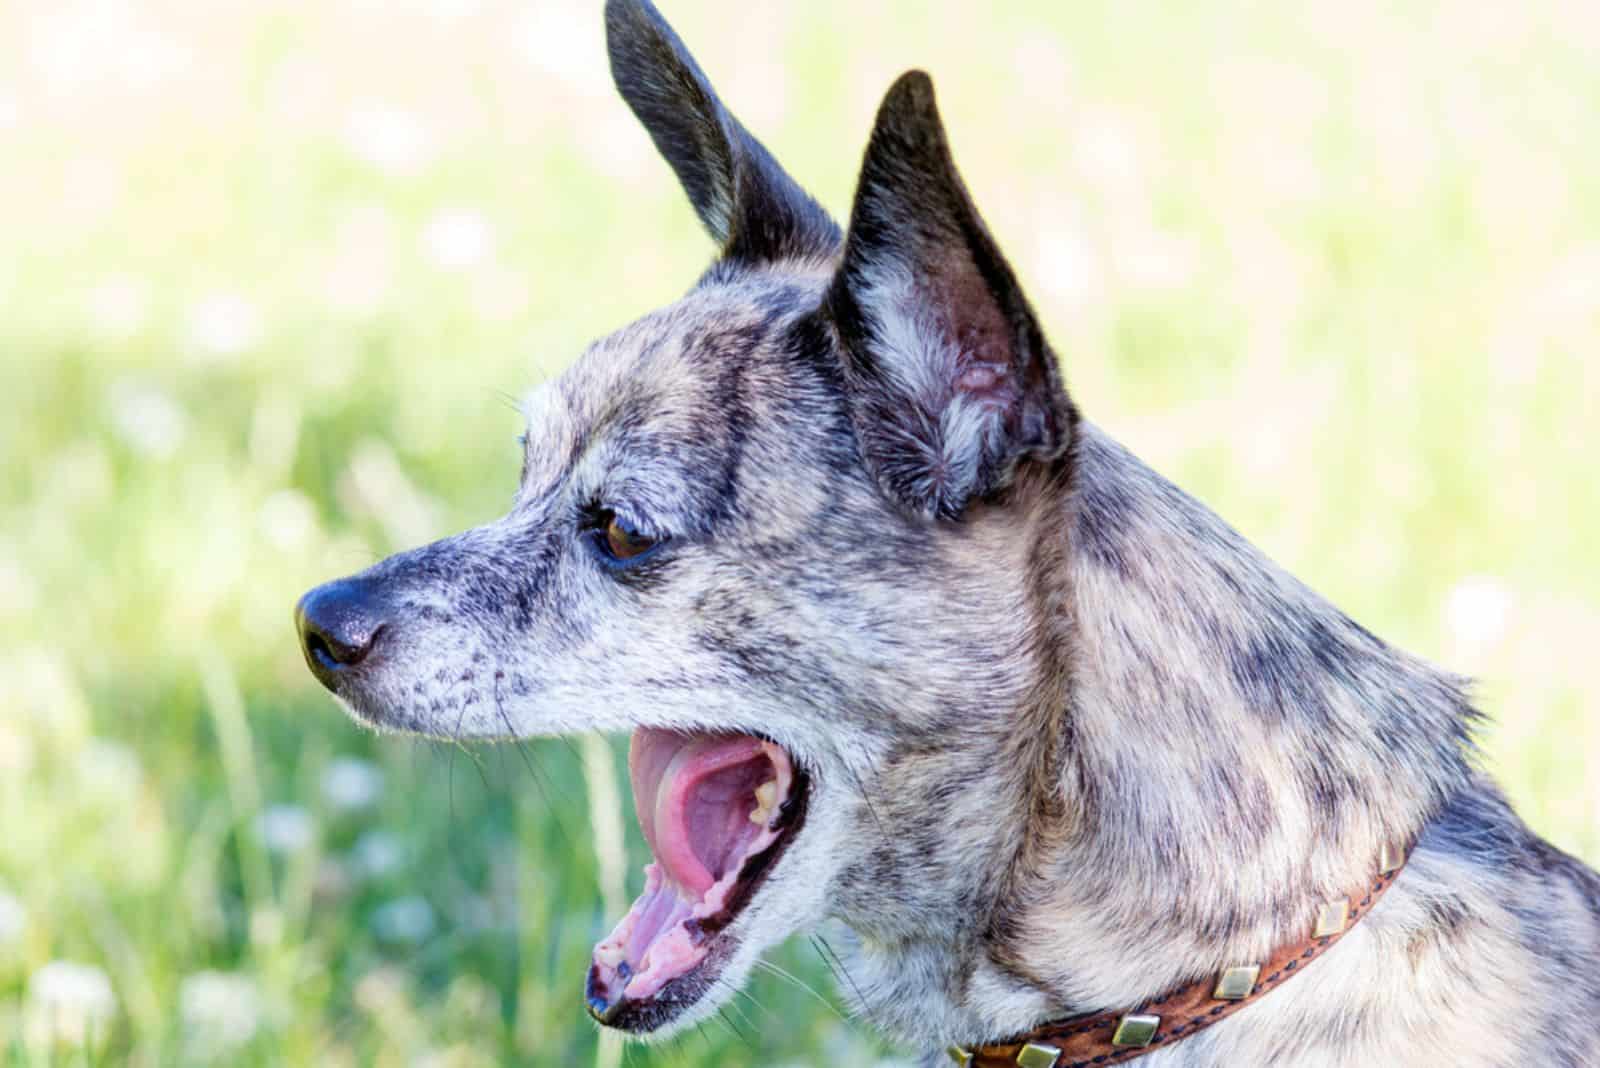 Brindle dog yawns mightily